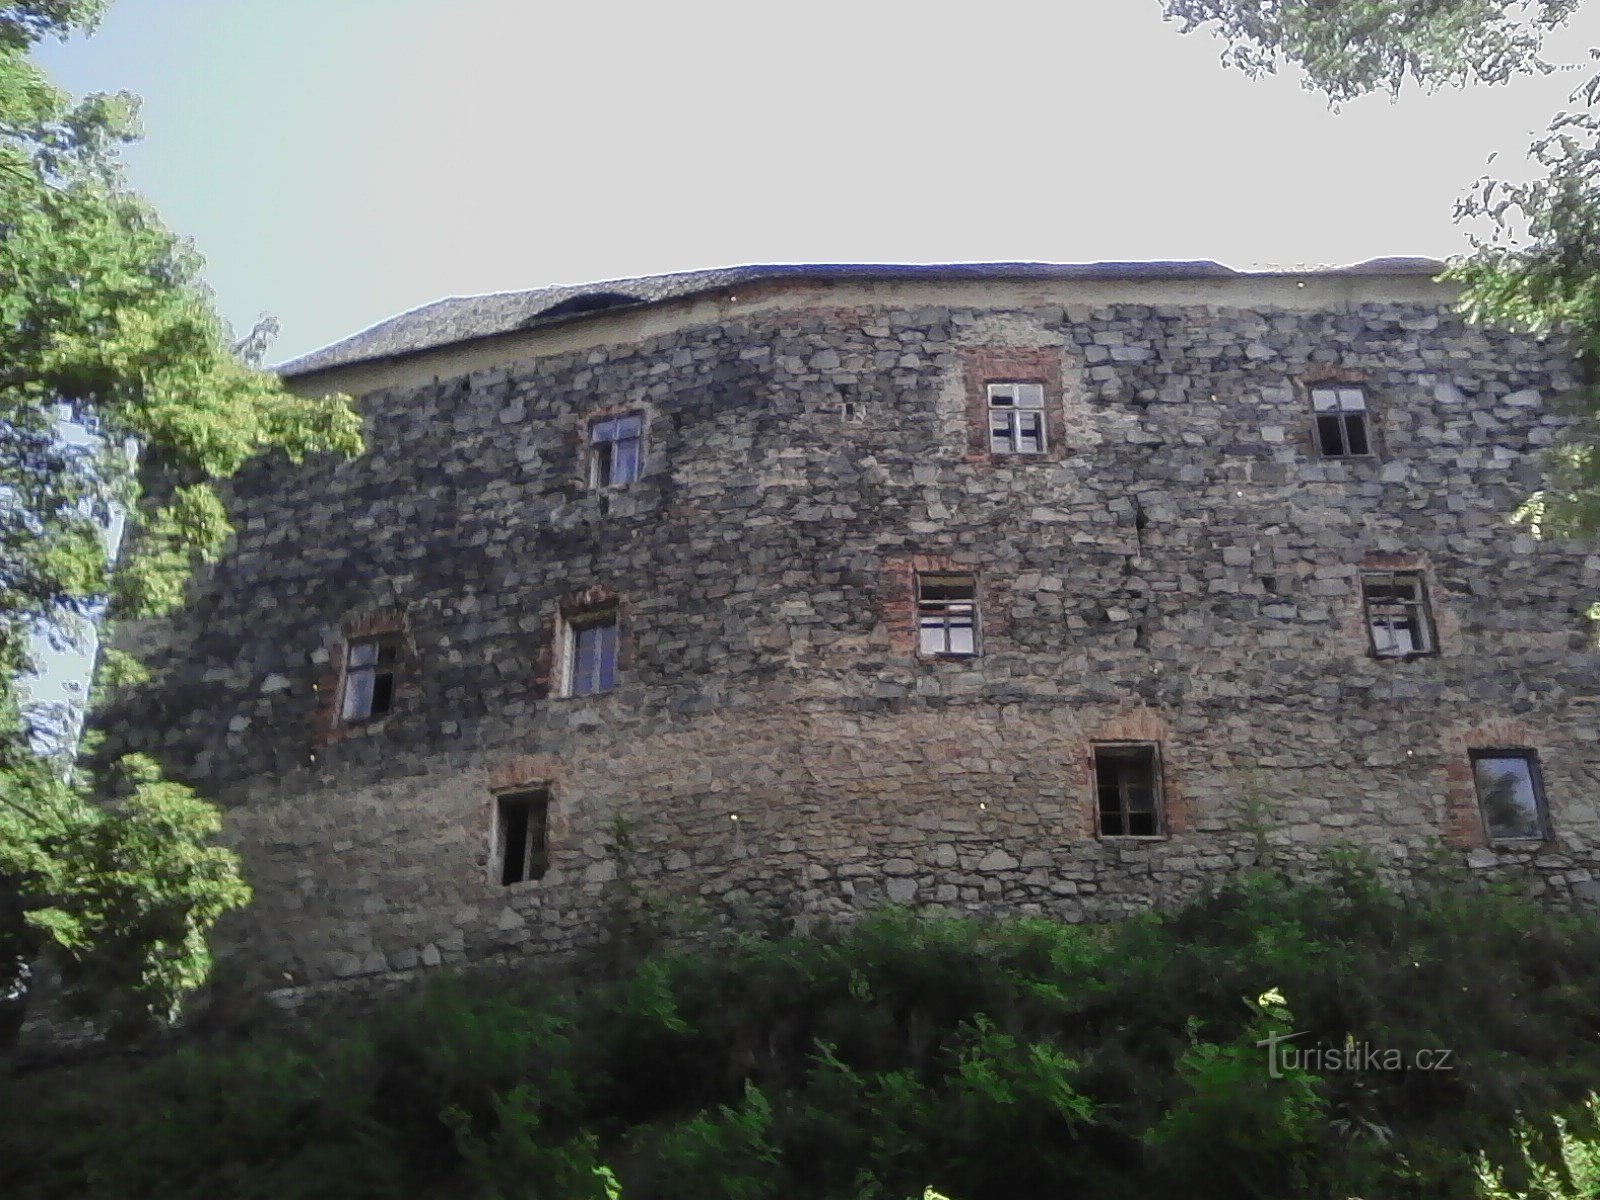 1. Fortezza delle nuvole. Fortezza medievale del XIV secolo. con le fortificazioni del palazzo, sorge su un colle